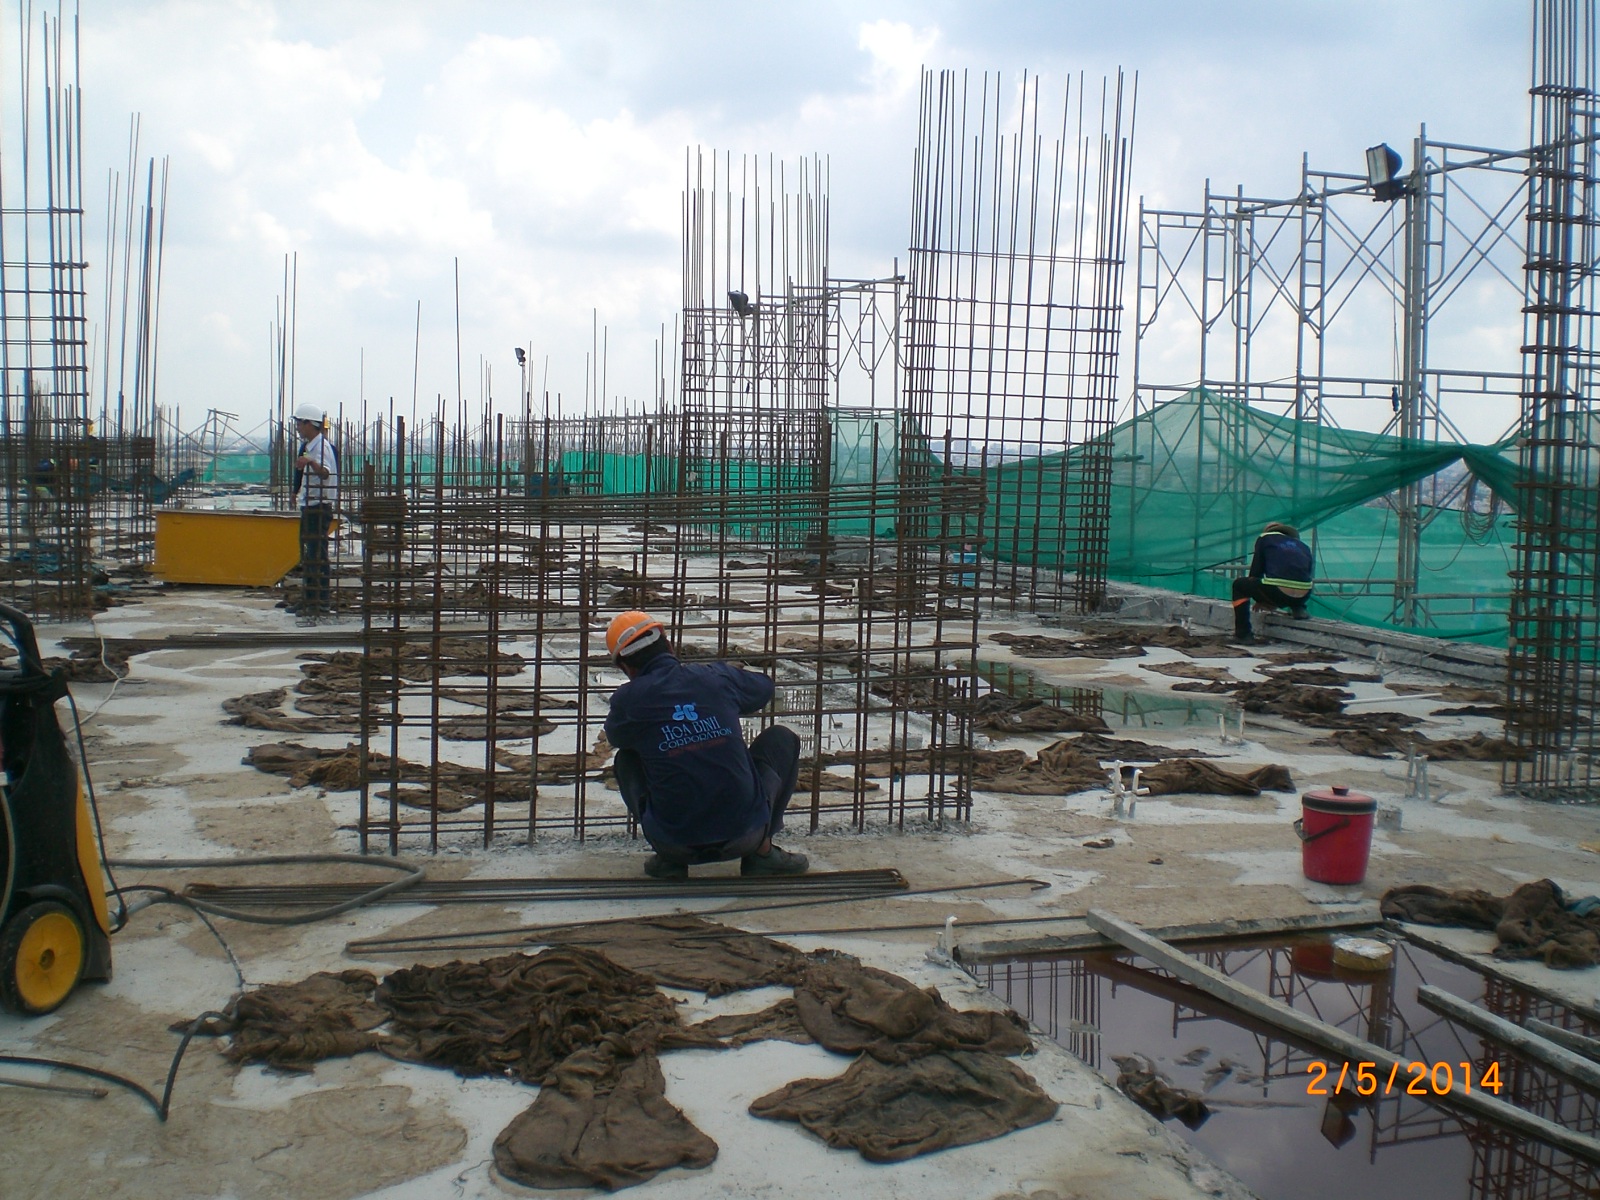 Tiến trình xây dựng greenhills - tháng 5/2014